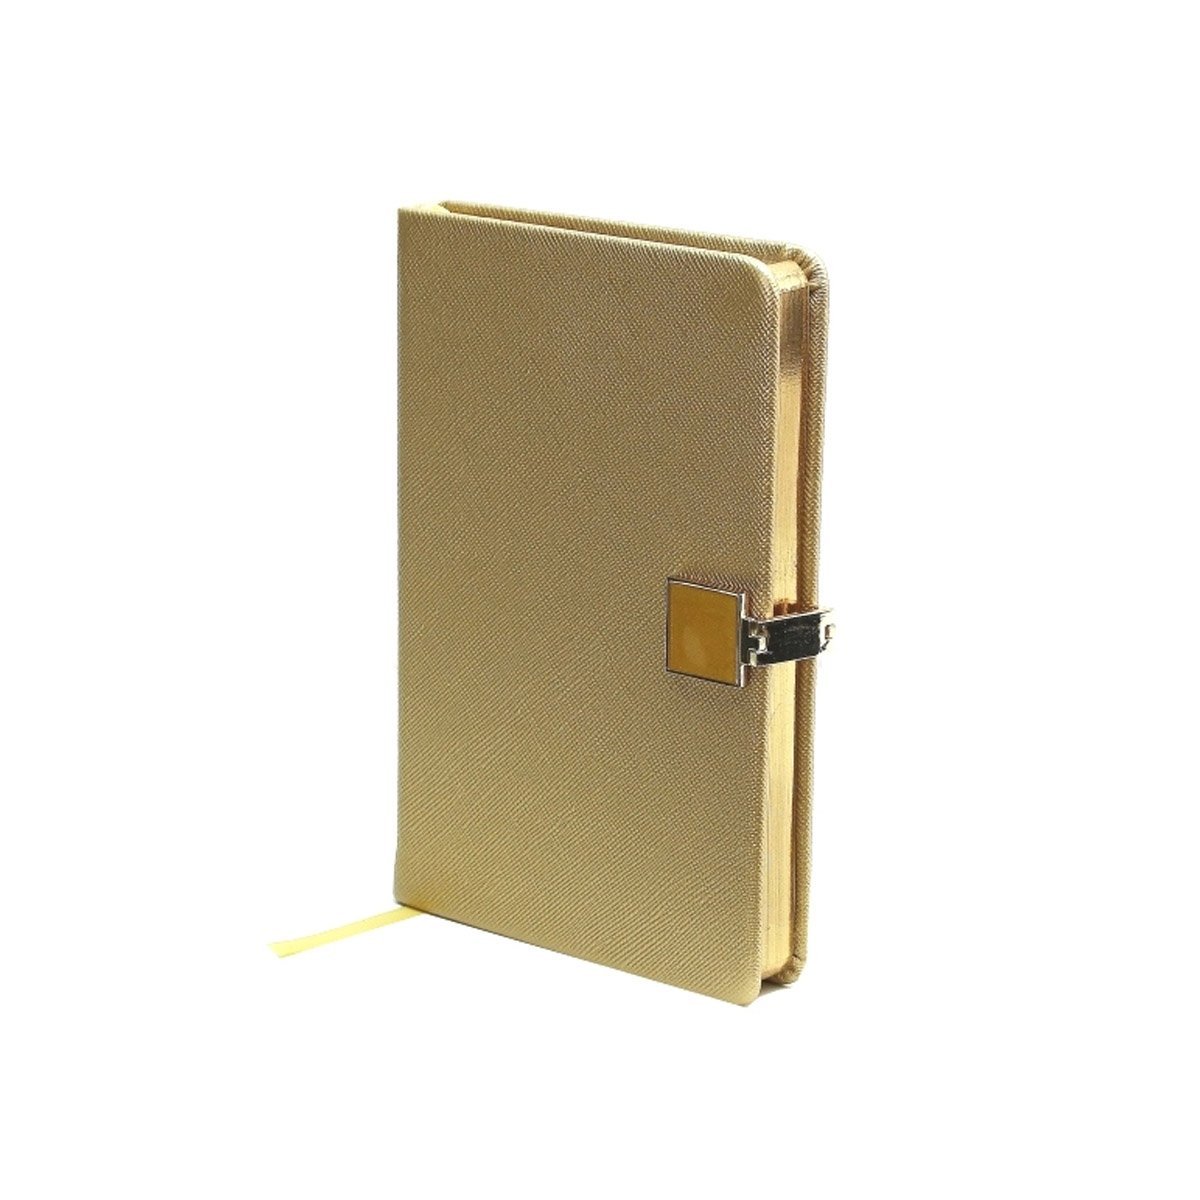 Gold & Gold A6 Notebook - Addison Ross Ltd UK